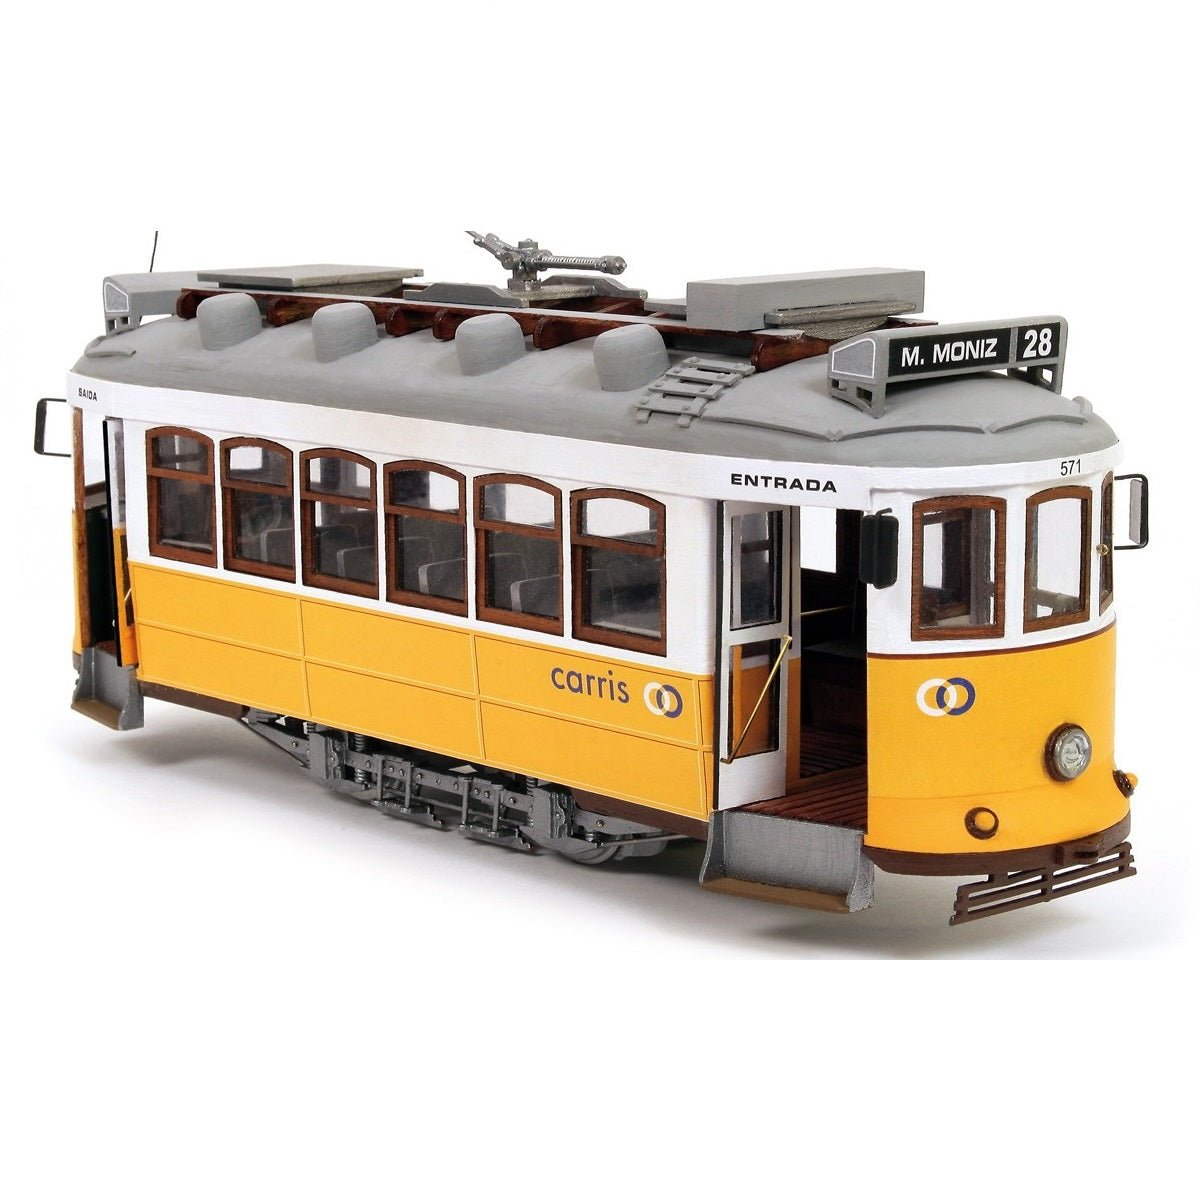 OcCre® Lisboa Tram Wooden Model Kit, 1/24 Scale